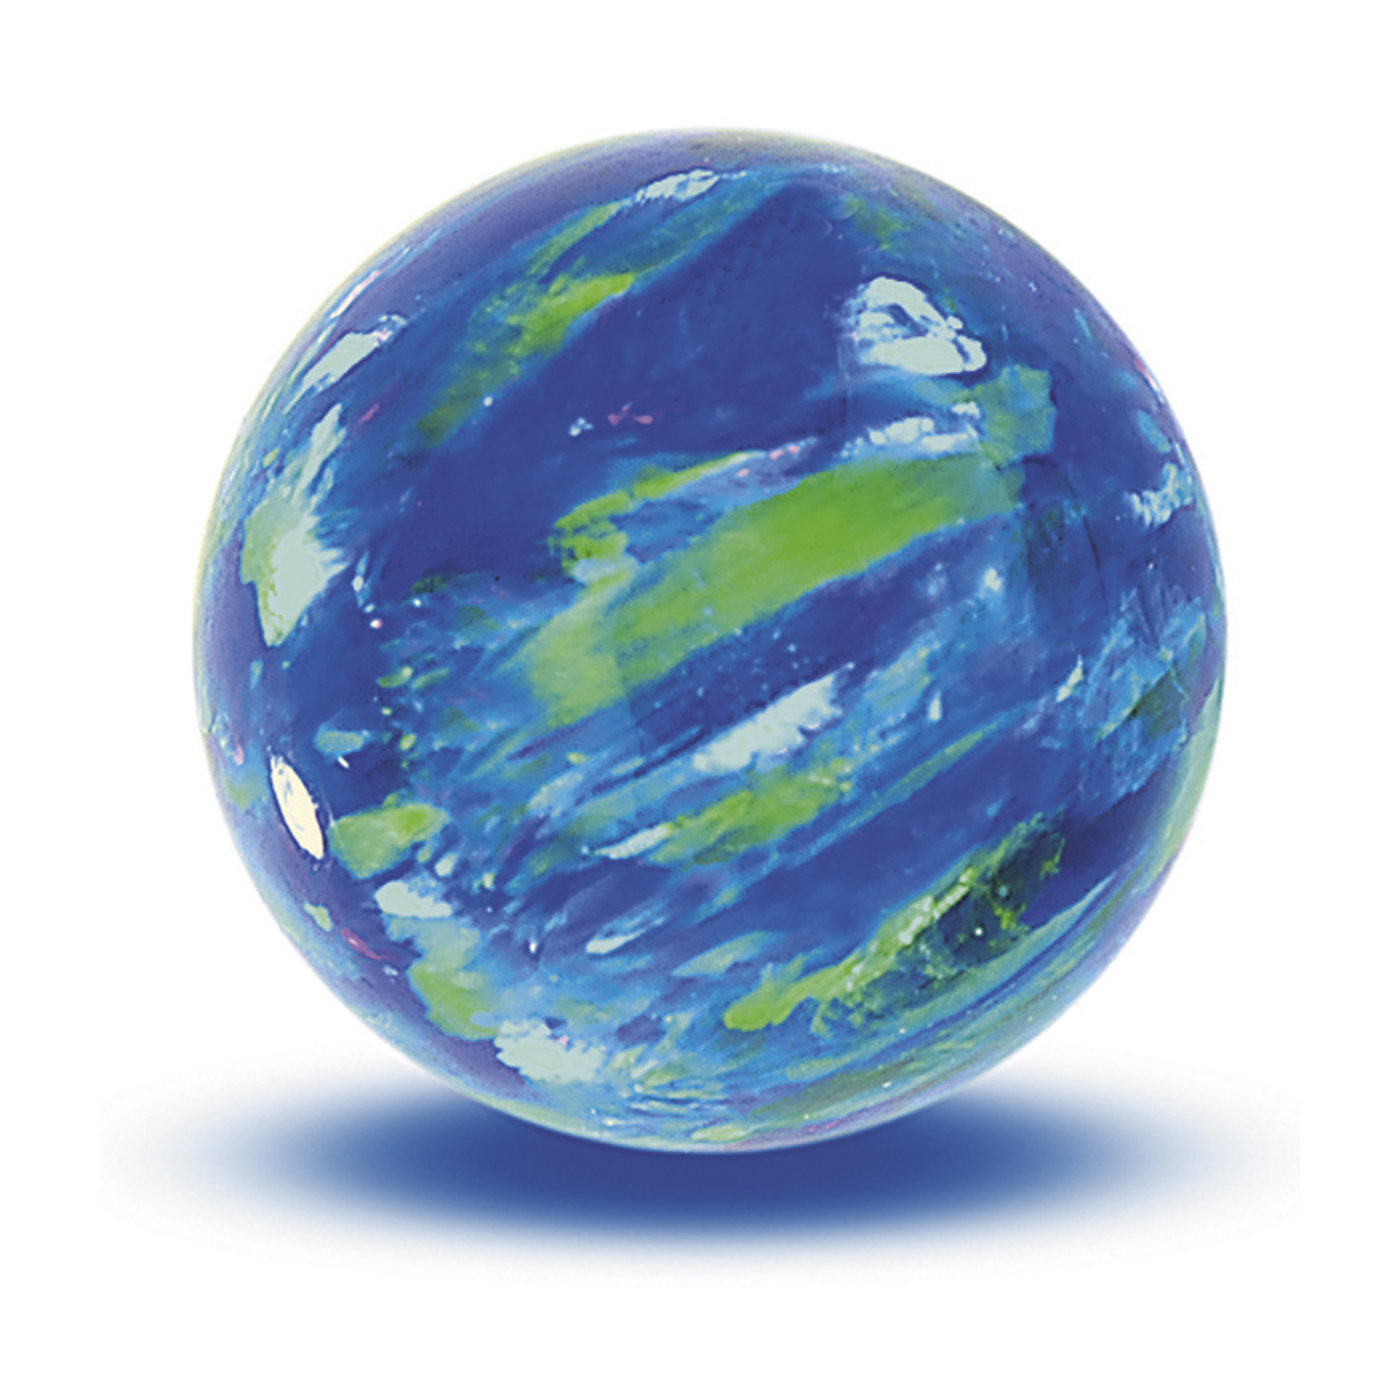 Opal Imitation Ball, Cyan, ø 10 mm, Spot Drilled - 1 piece